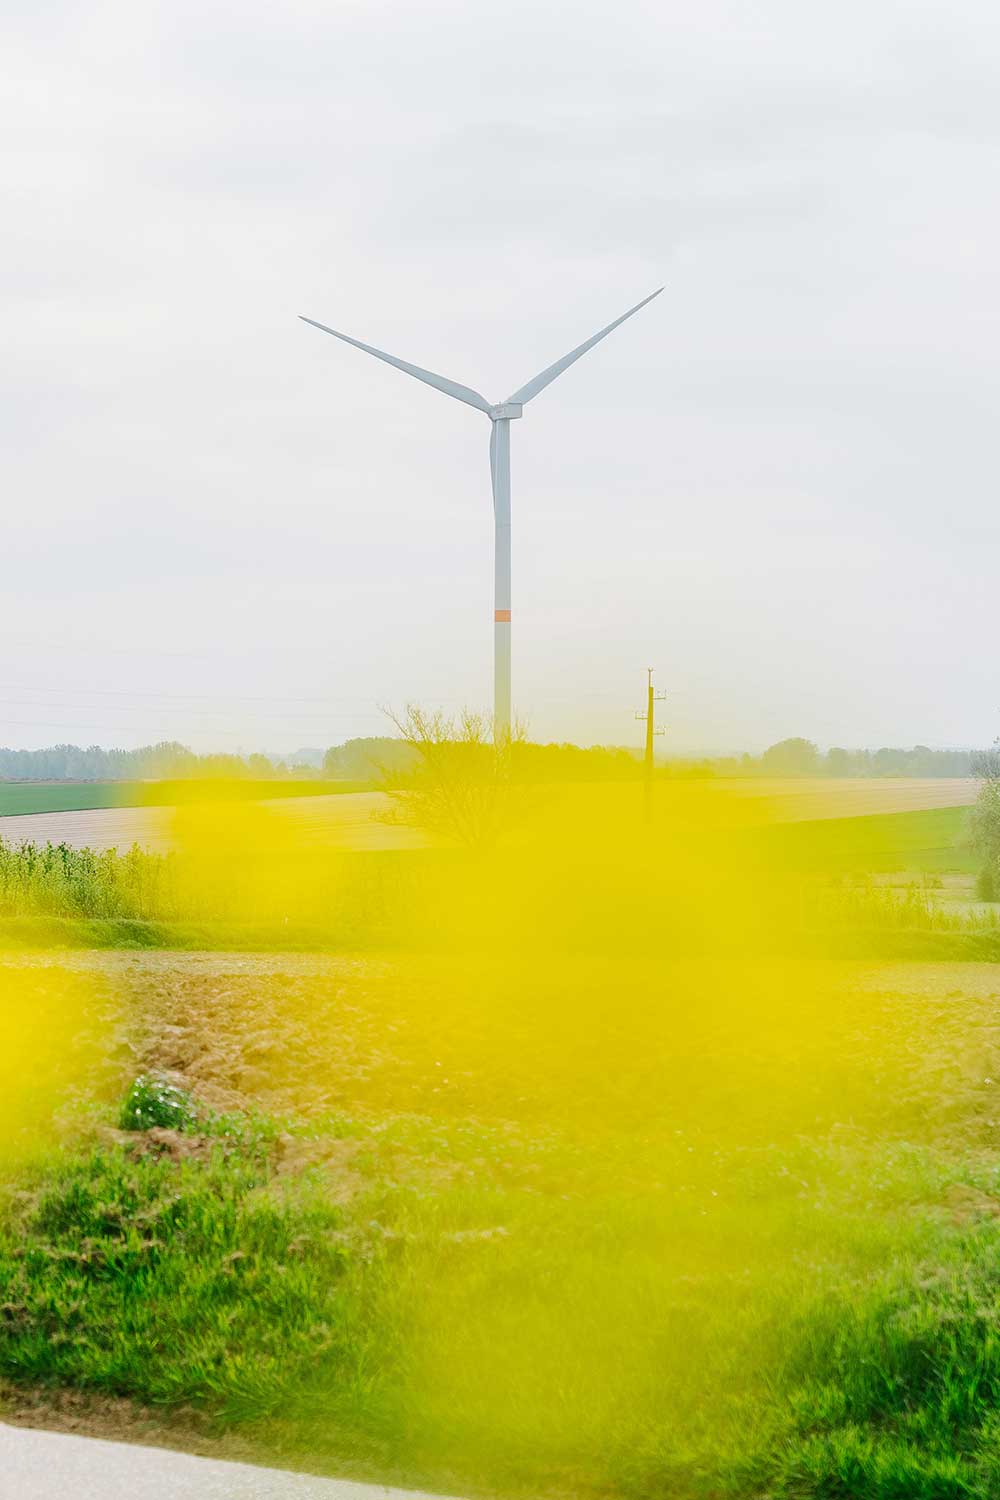 Over Luminus - Klimaat: Belg pleit voor groene heropstart economie en verdere ontwikkeling van hernieuwbare energieproductie.